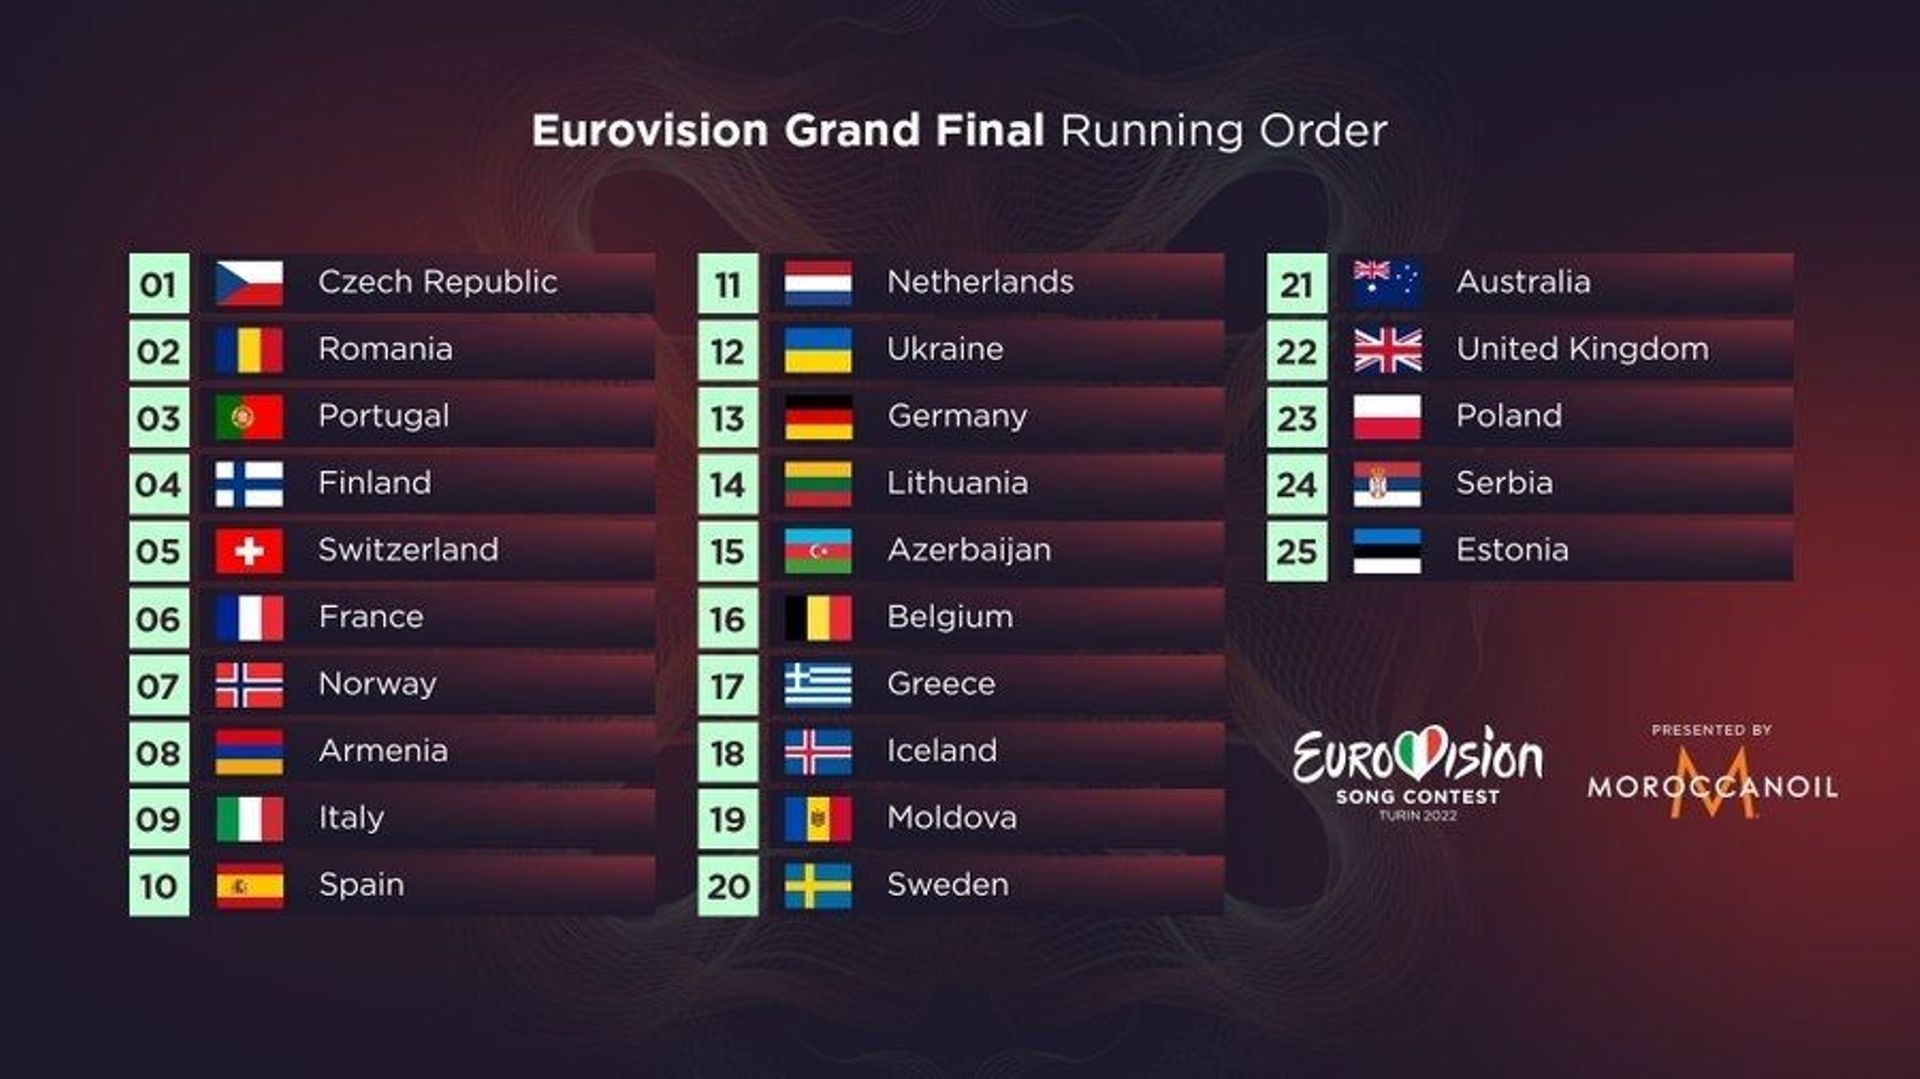 Ordre de passage de la Grande Finale de l'eurovision